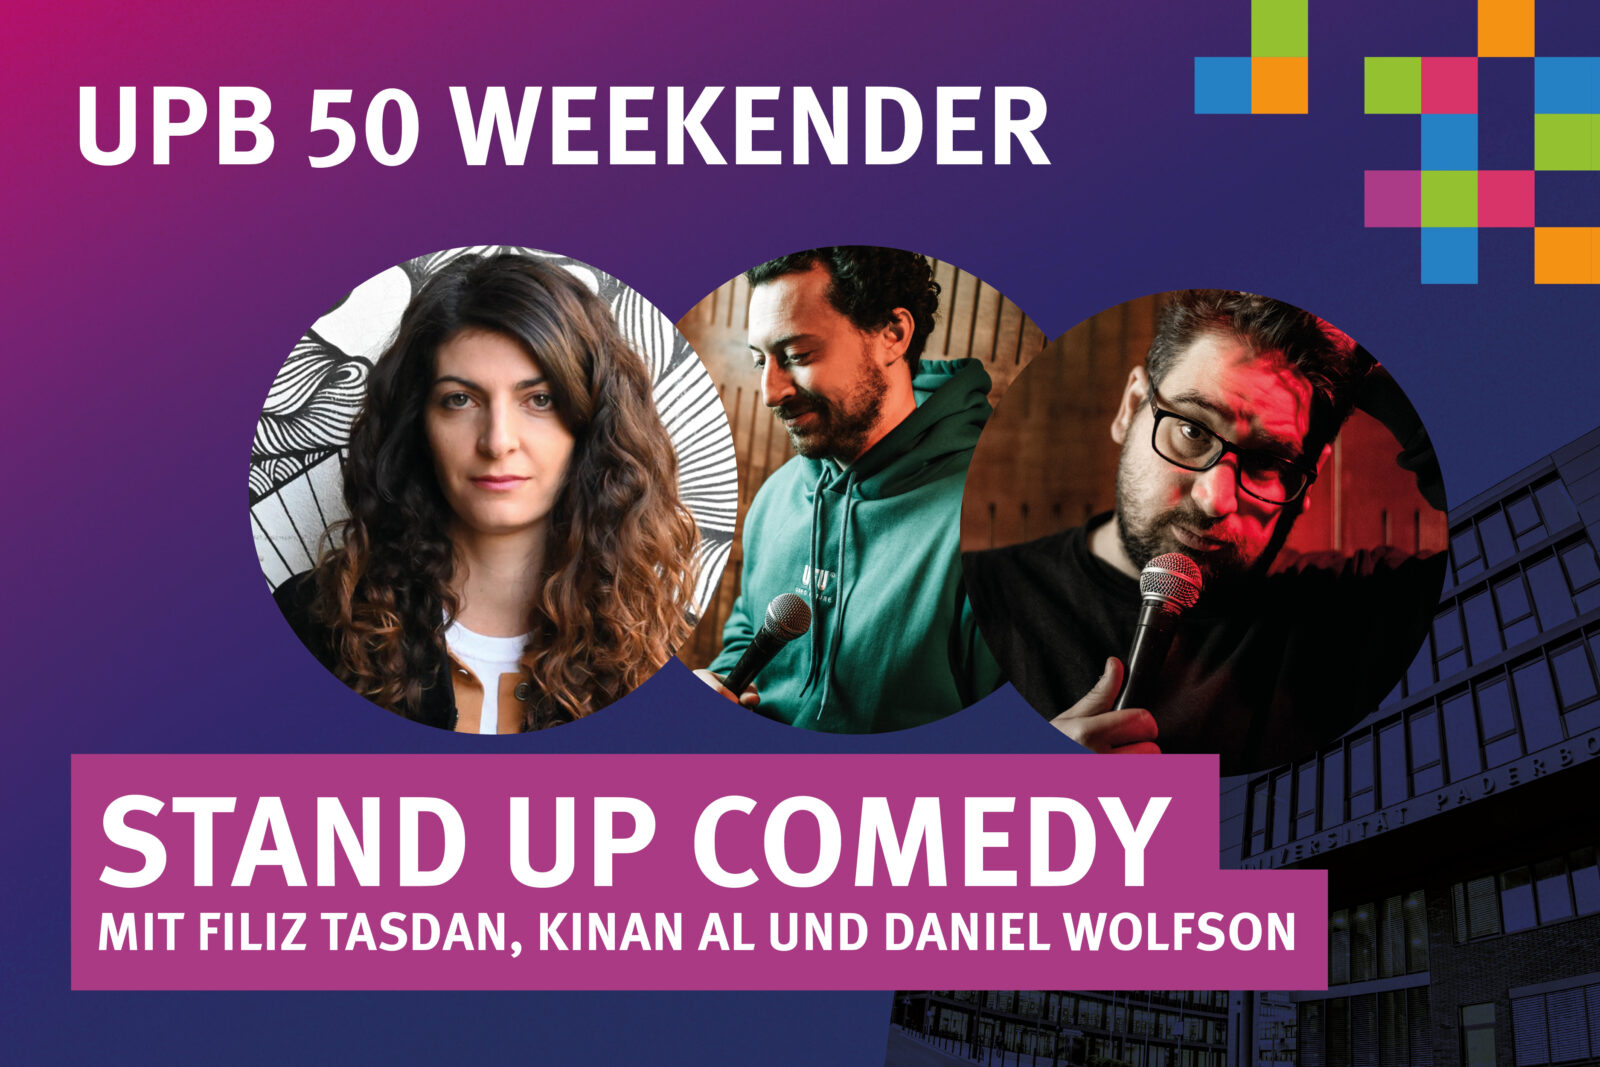  UPB 50 WEEKENDER – STAND UP COMEDY mit Filiz Tasdan, Kinan Al und Daniel Wolfson